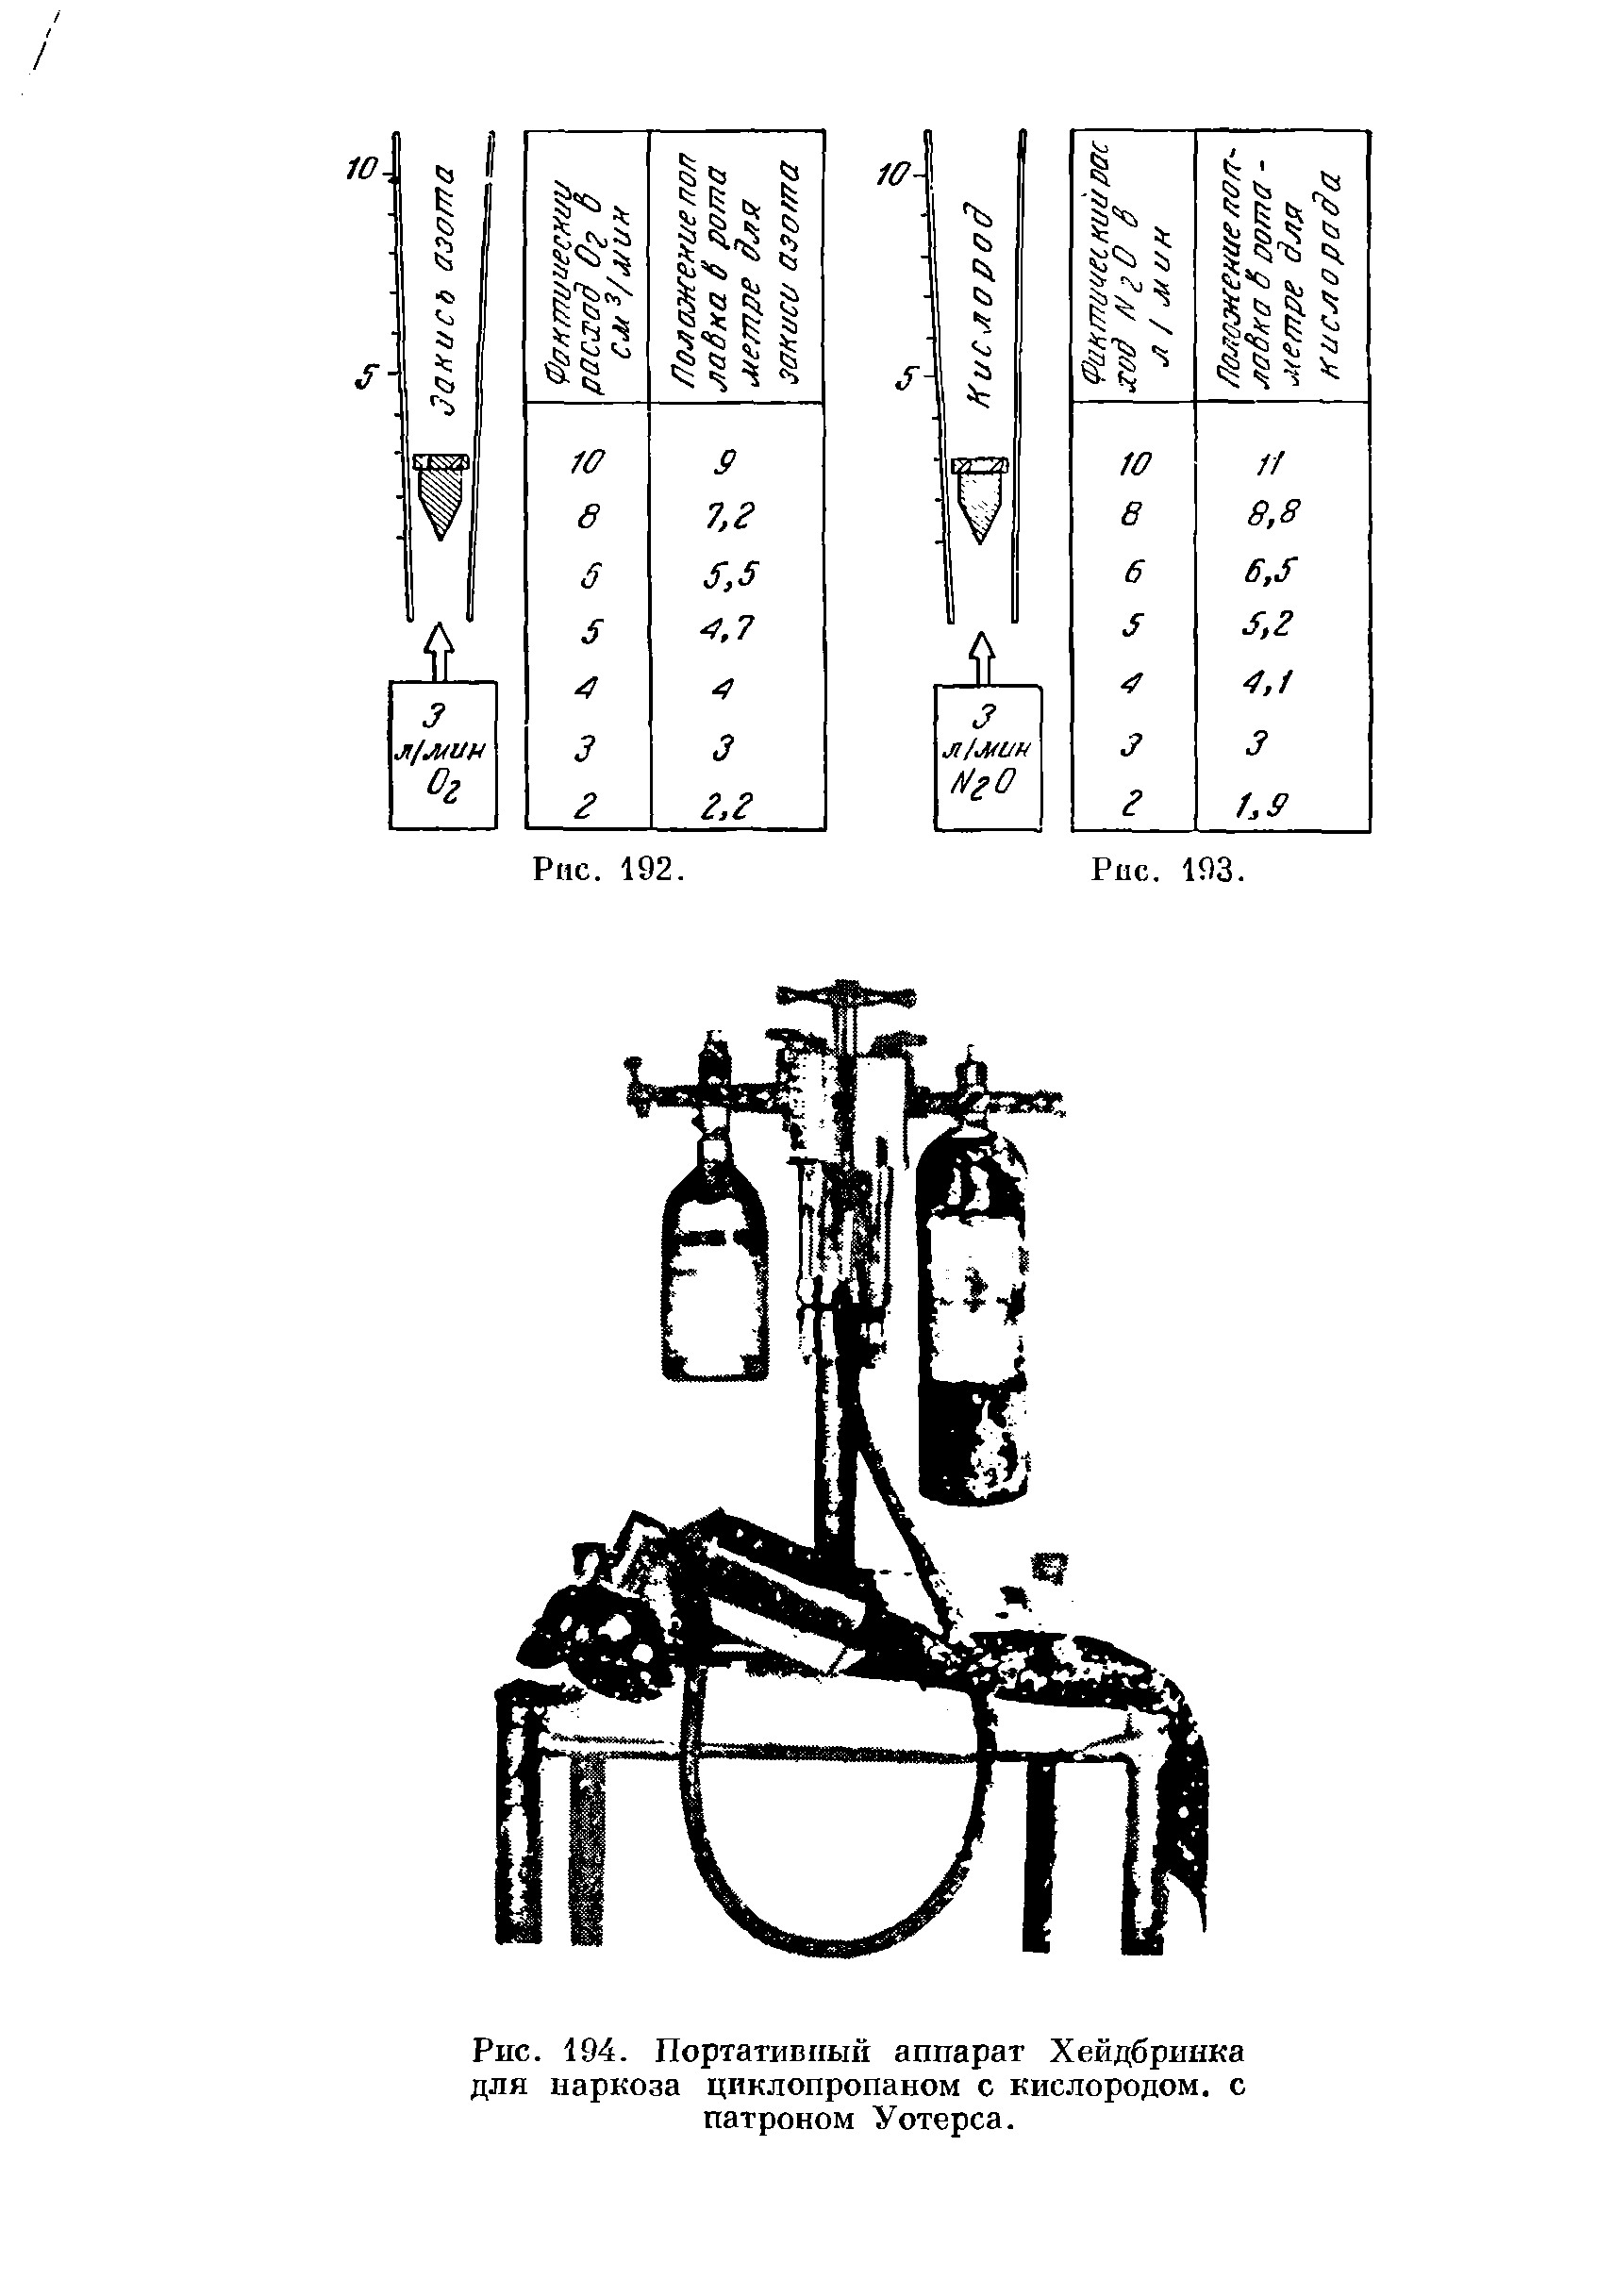 Рис. 194. Портативный аппарат Хейдбринка для наркоза циклопропаном с кислородом, с патроном Уотерса.